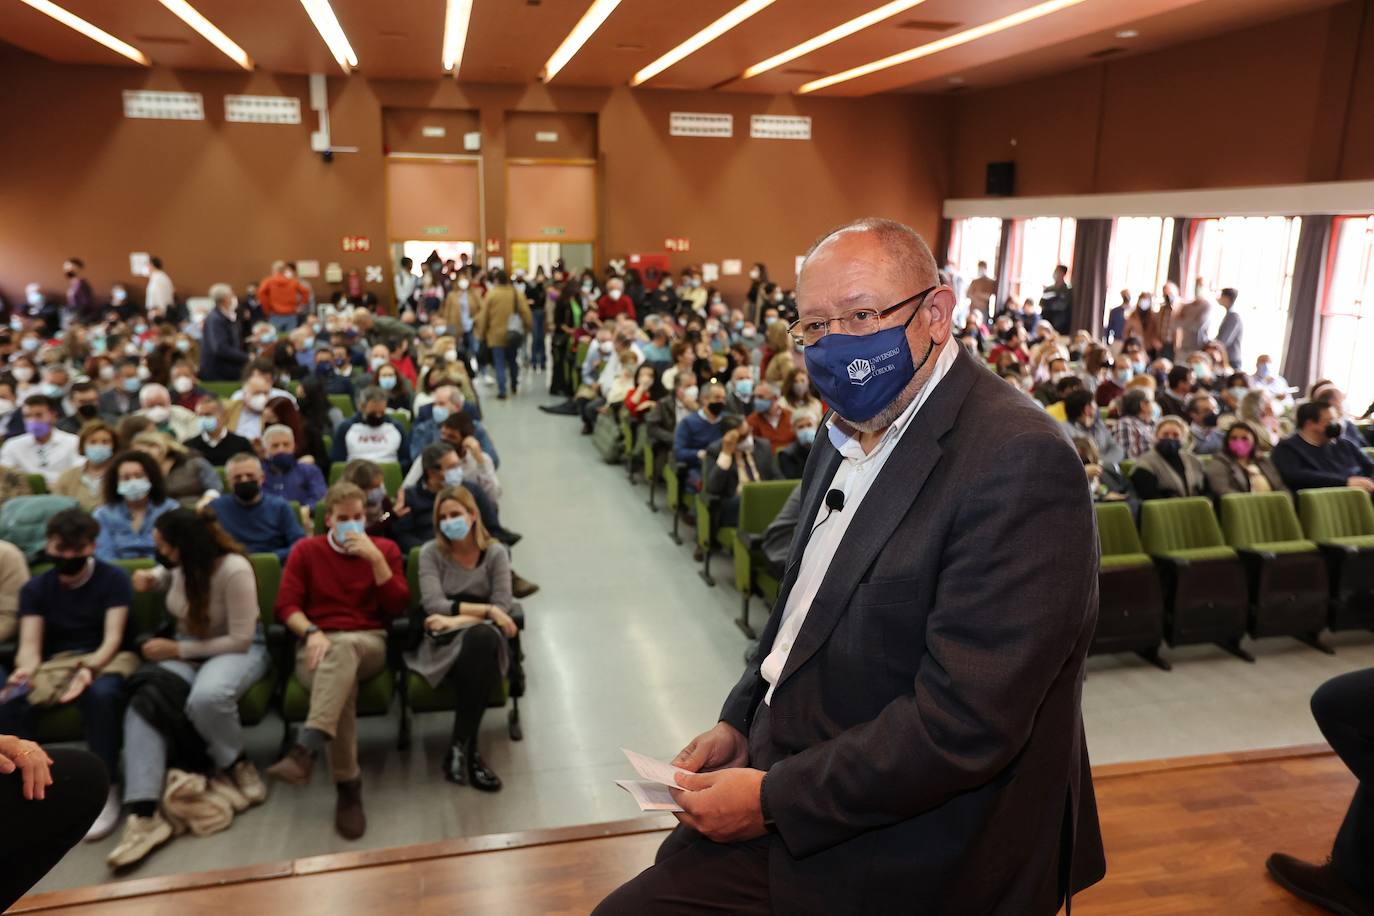 La presentación de la candidatura a rector de la UCO de Manuel Torralbo, en imágenes